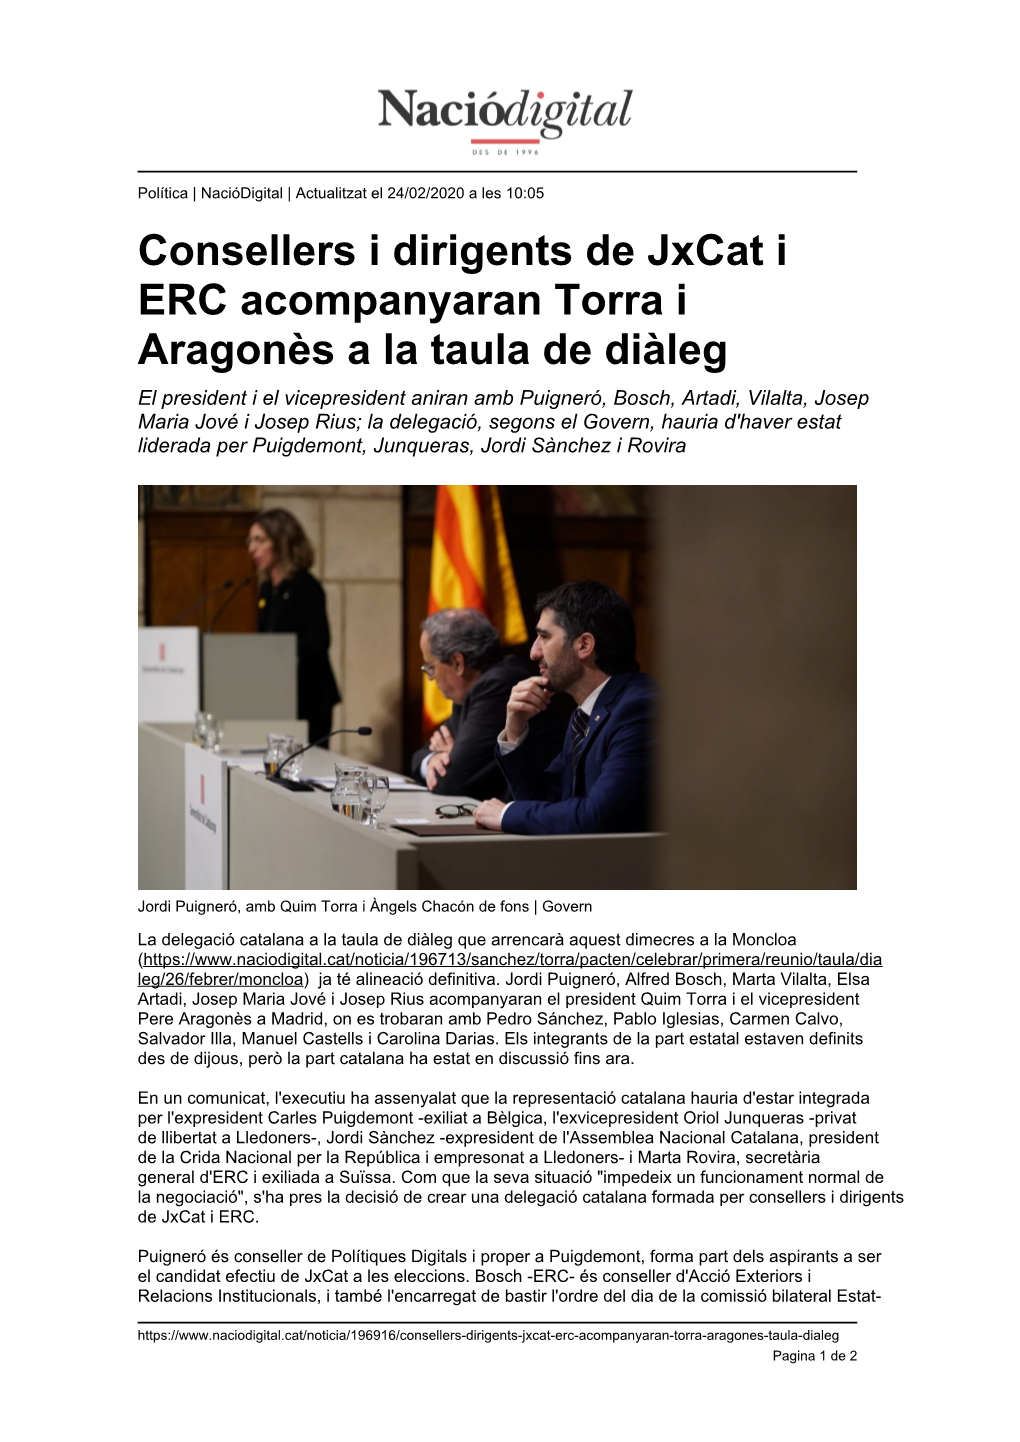 Consellers I Dirigents De Jxcat I ERC Acompanyaran